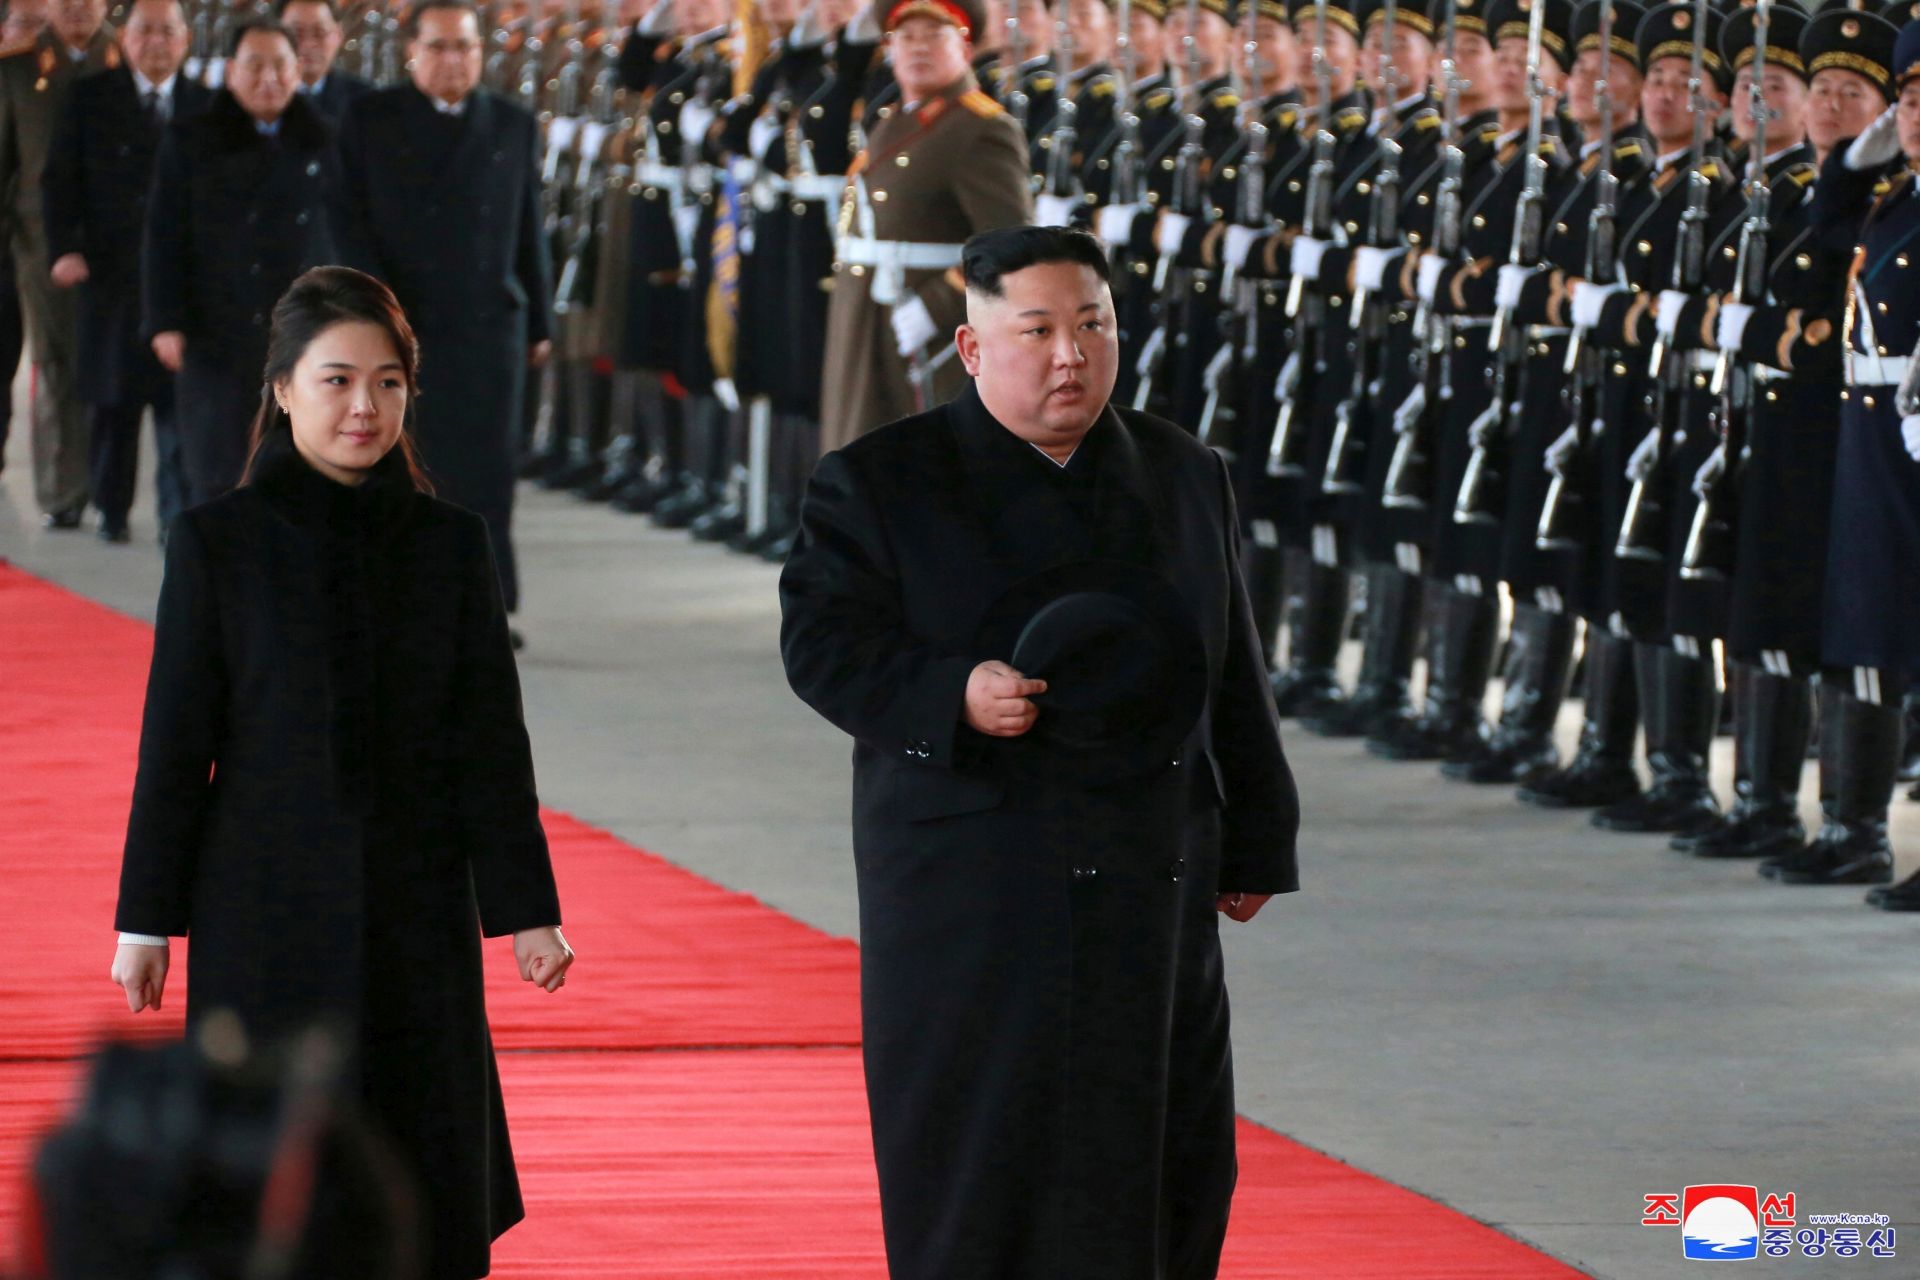 Kim Dzsong Un befolyásos húga figyelmeztette az Egyesült Államokat